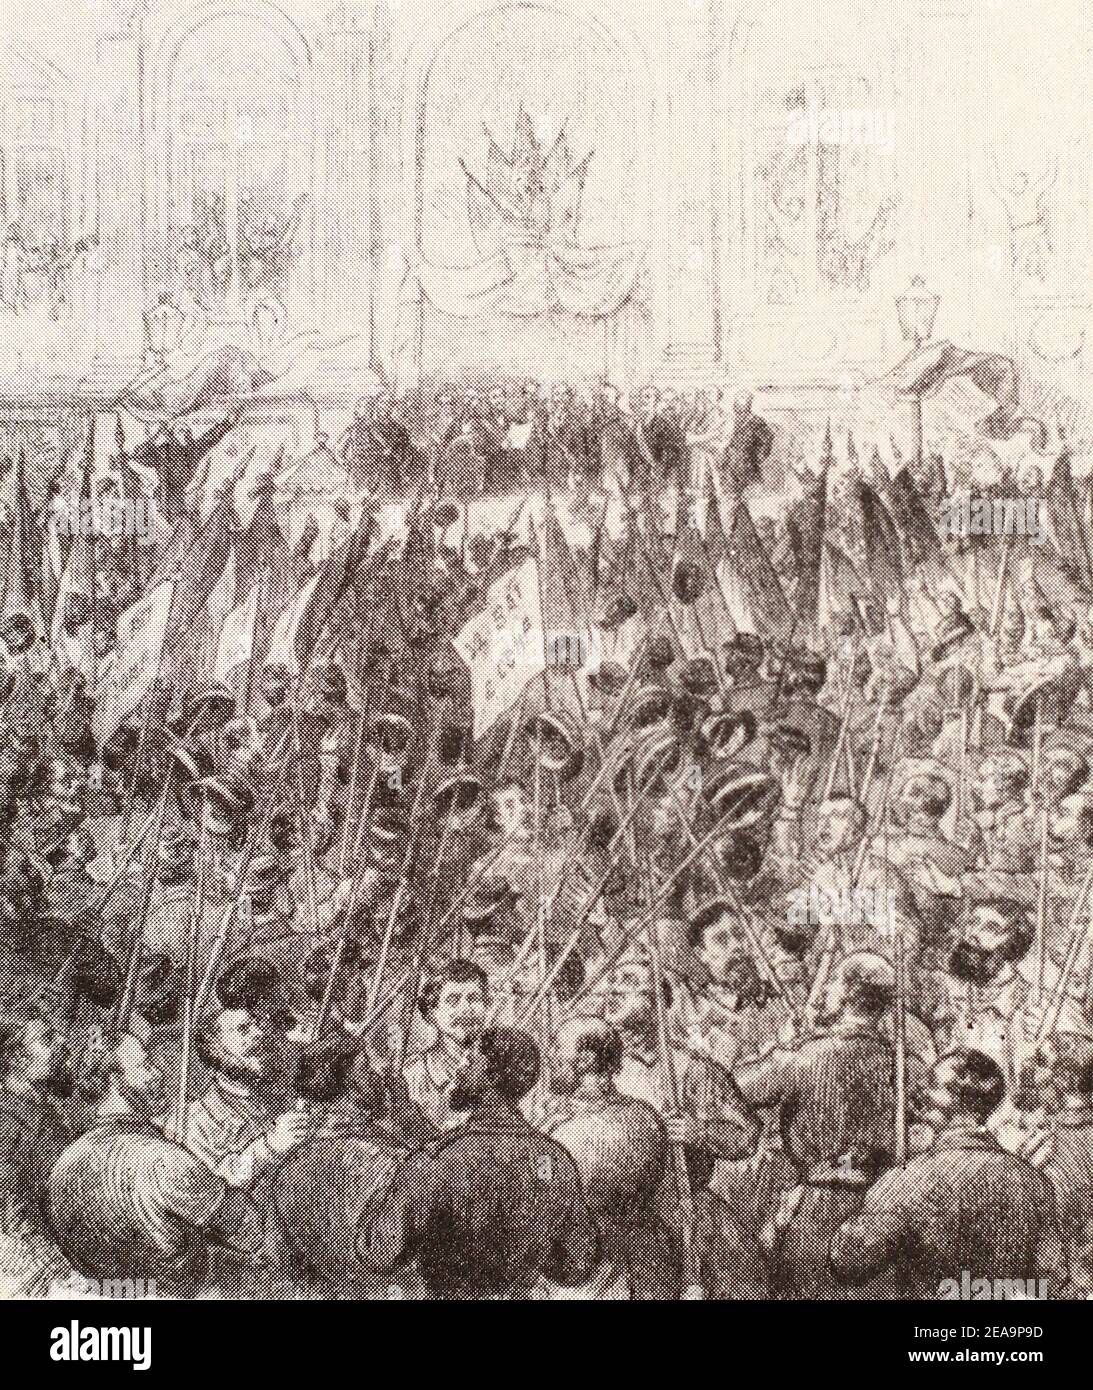 Proclamation de la commune de Paris sur la place en face de la mairie. Gravure de 1871. Banque D'Images